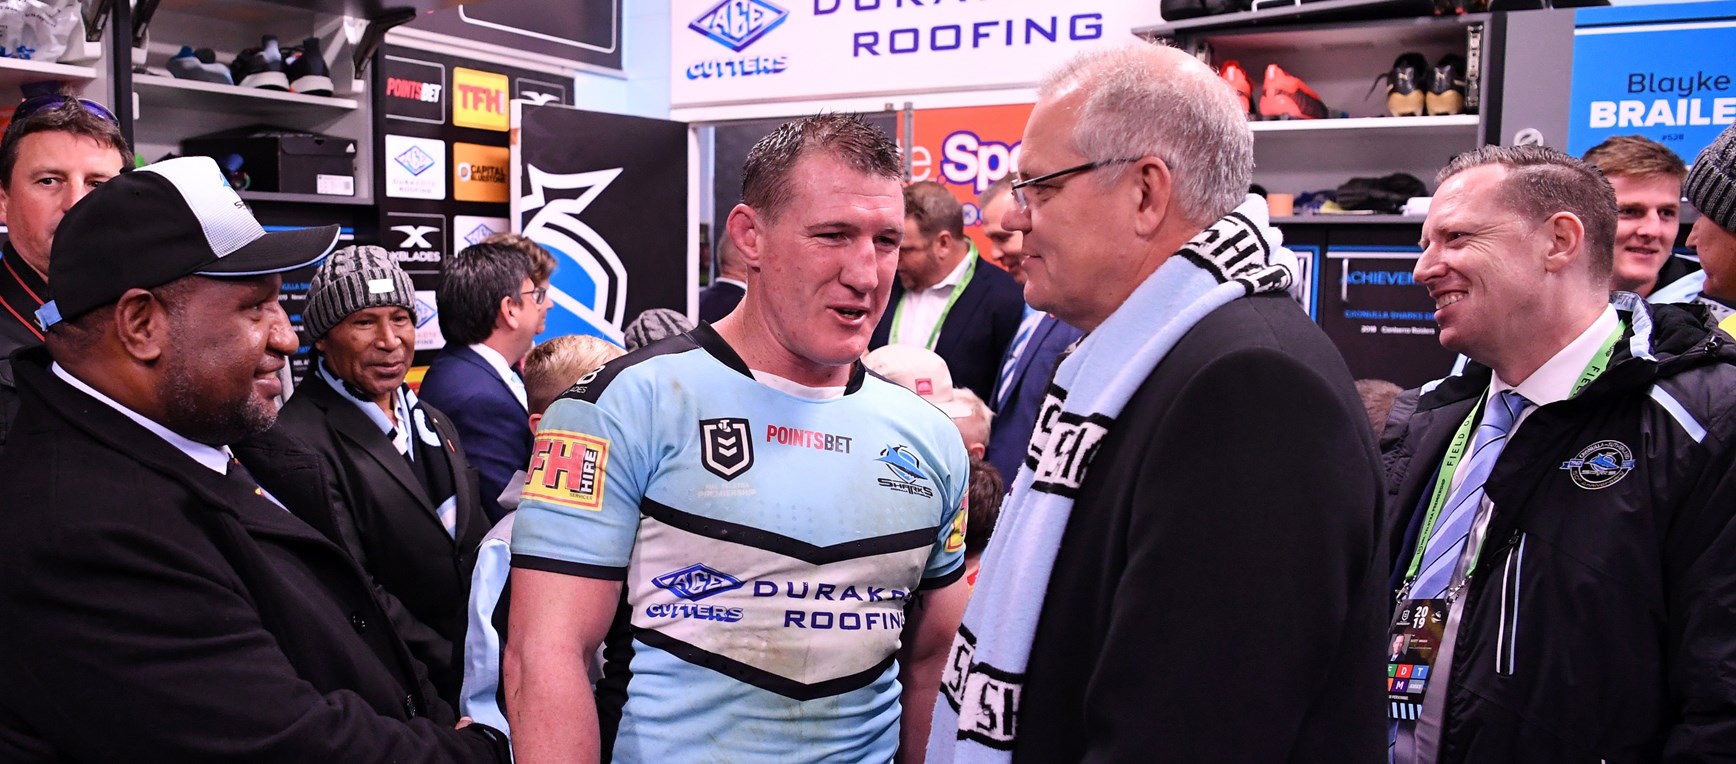 Prime Minister Morrison revels in Sharks win